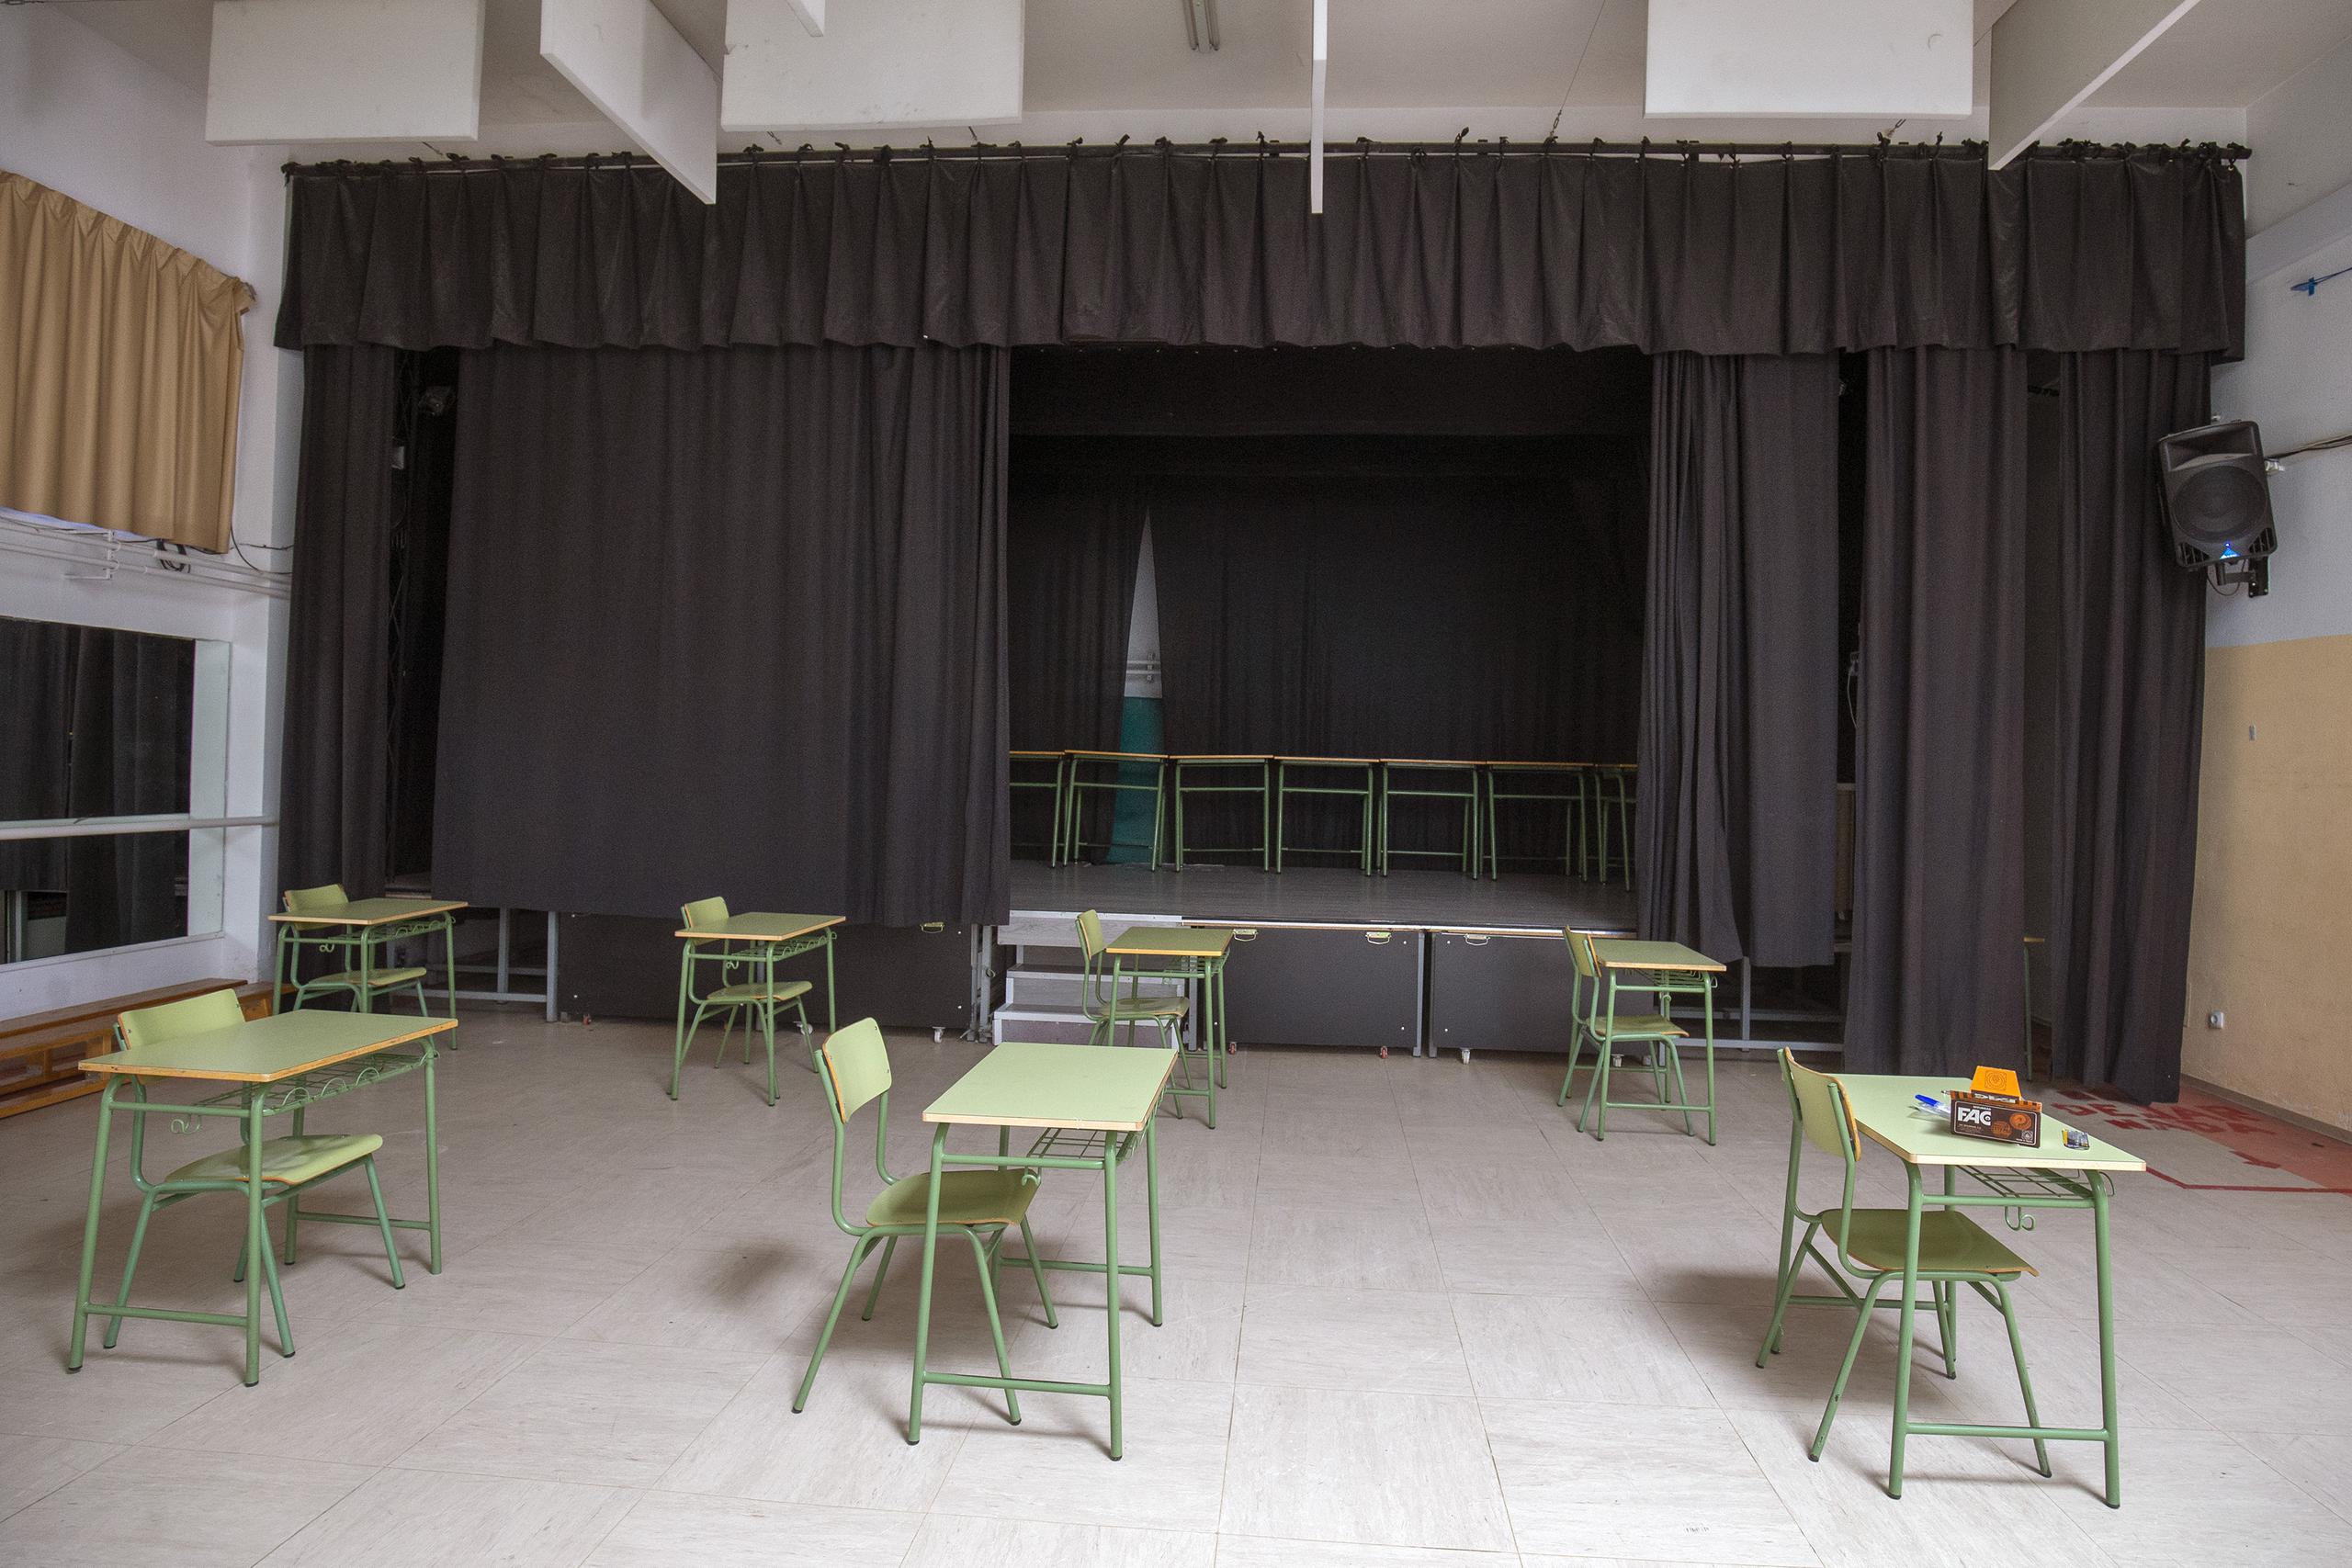 Un aula preparada en el gimnasio escolar de la escuela secundaria Rosa Chacel de Colmenar Viejo, en Madrid, España, el viernes 28 de agosto de 2020.